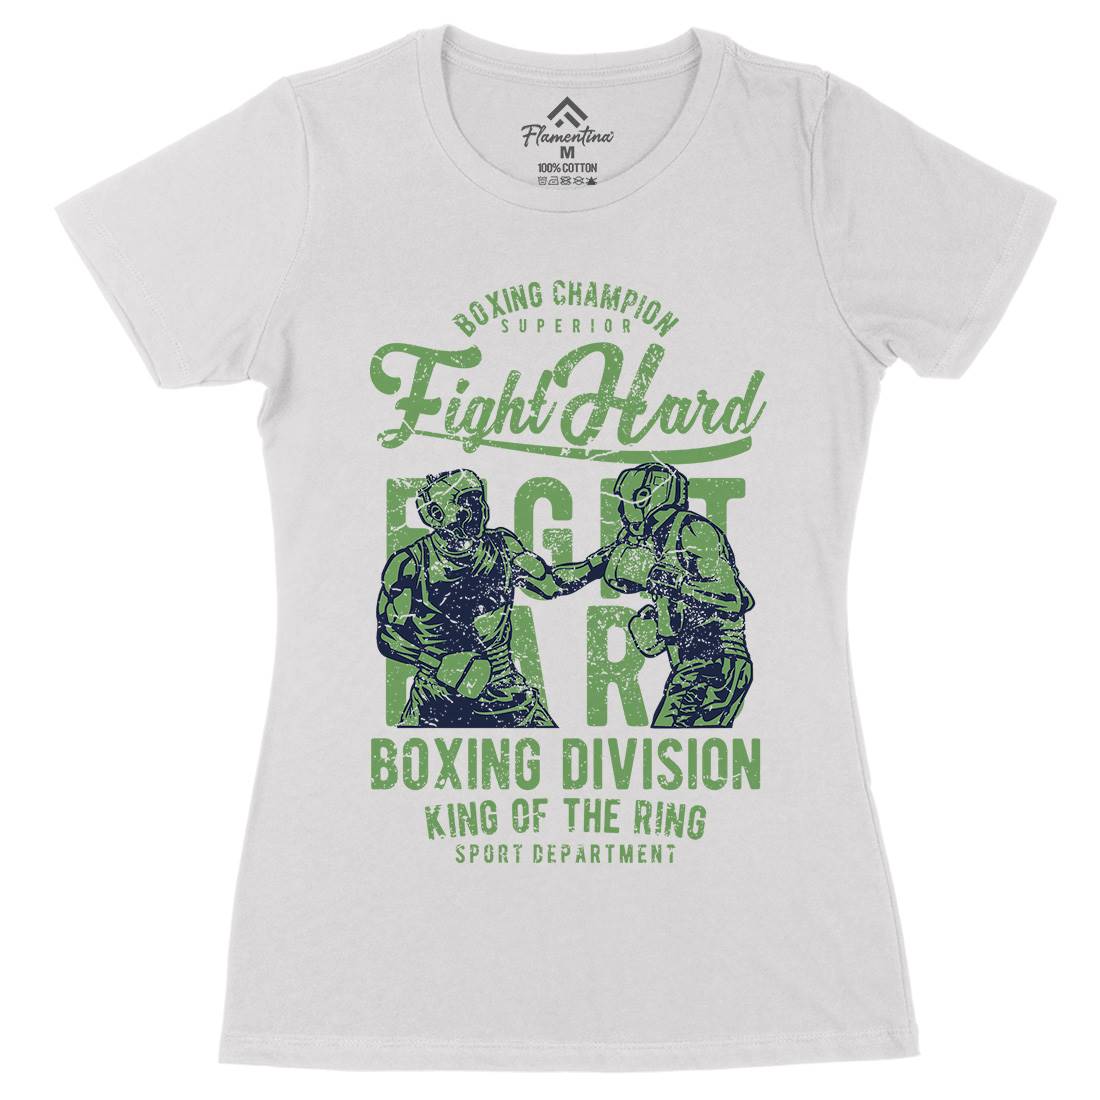 Fight Hard Womens Organic Crew Neck T-Shirt Sport A653